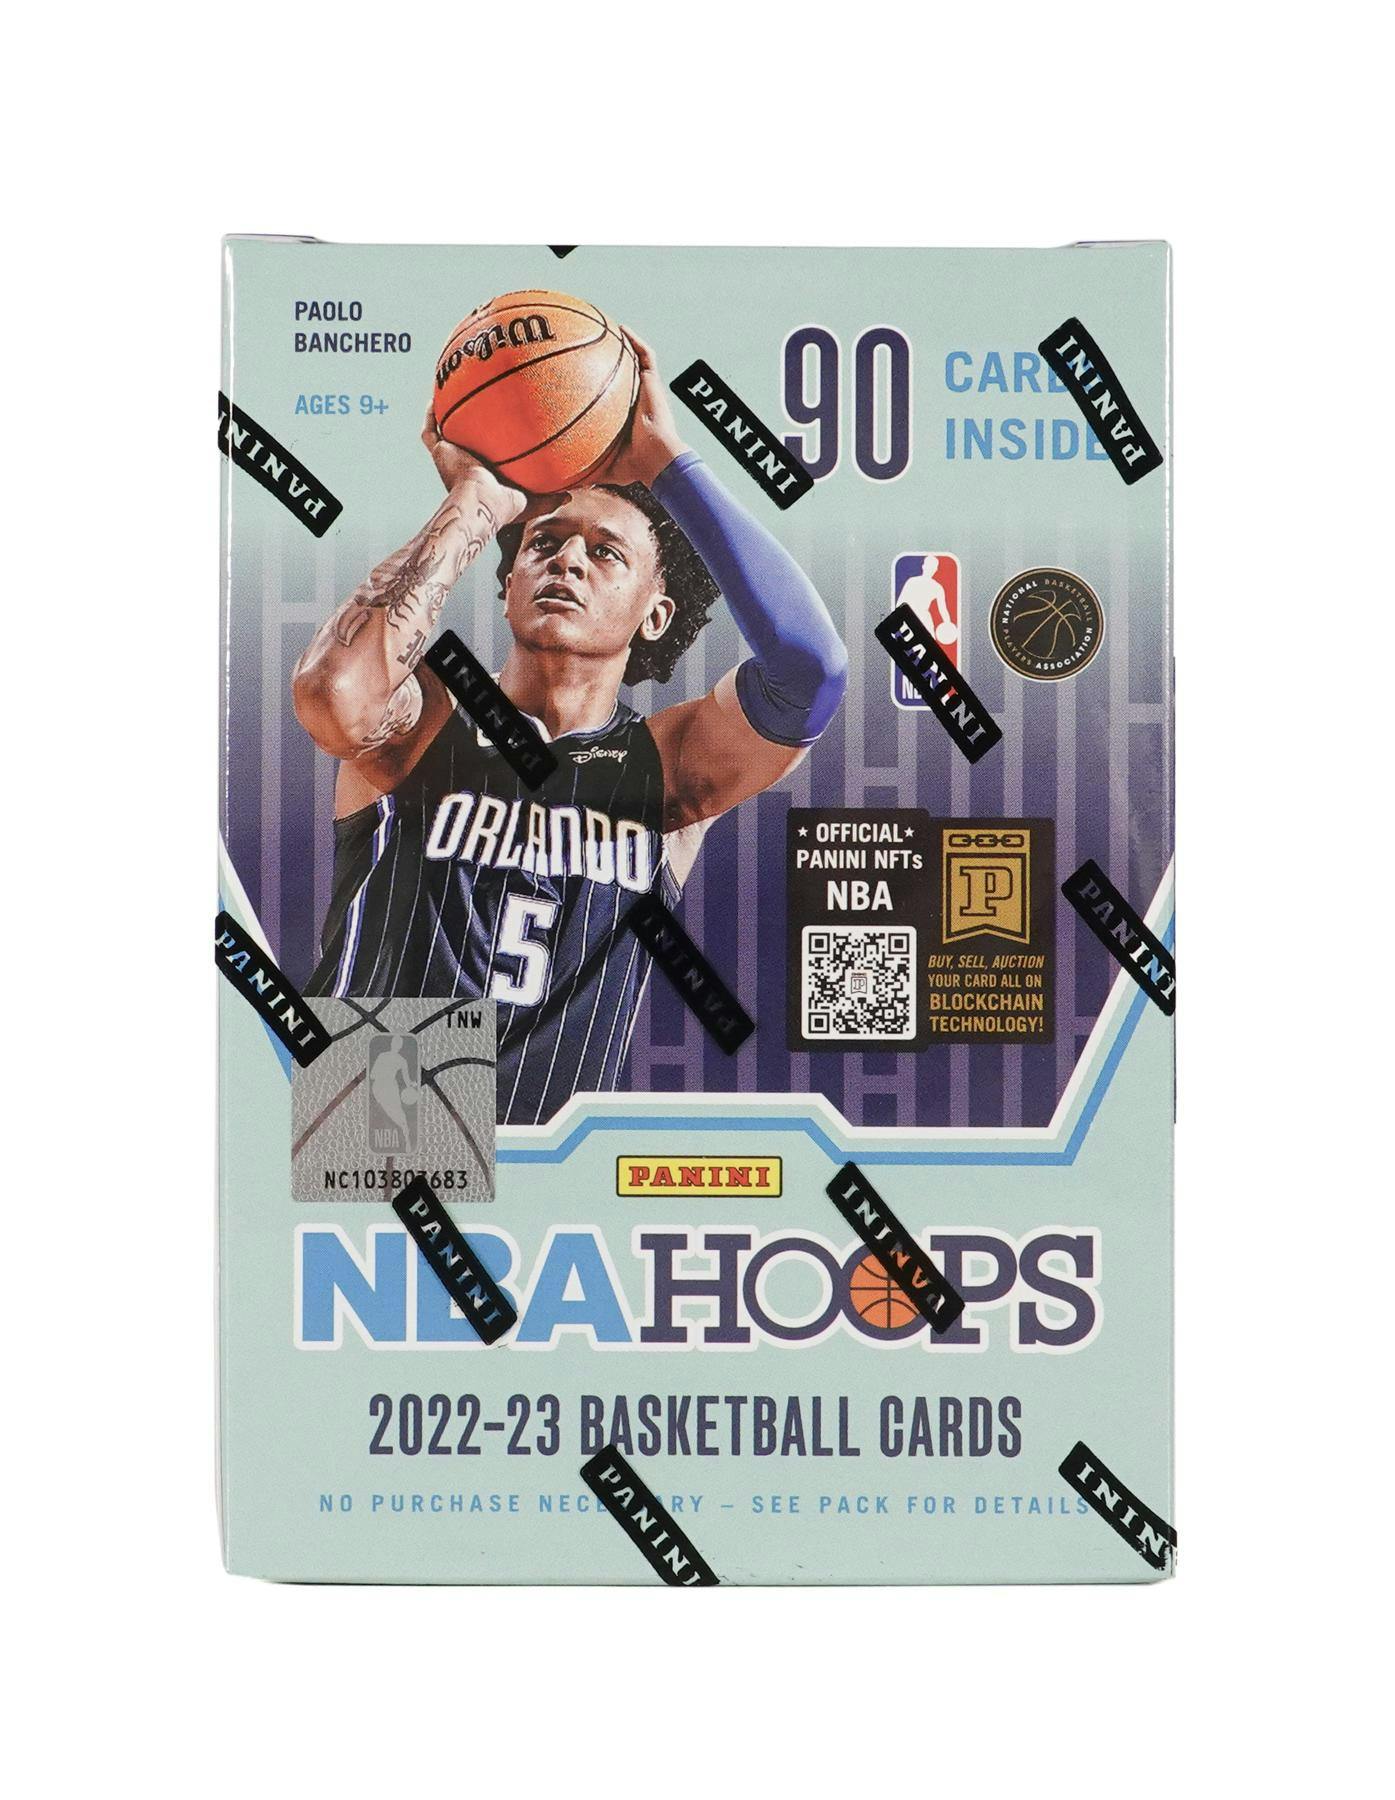 1/6 NBA Basketball Hoop